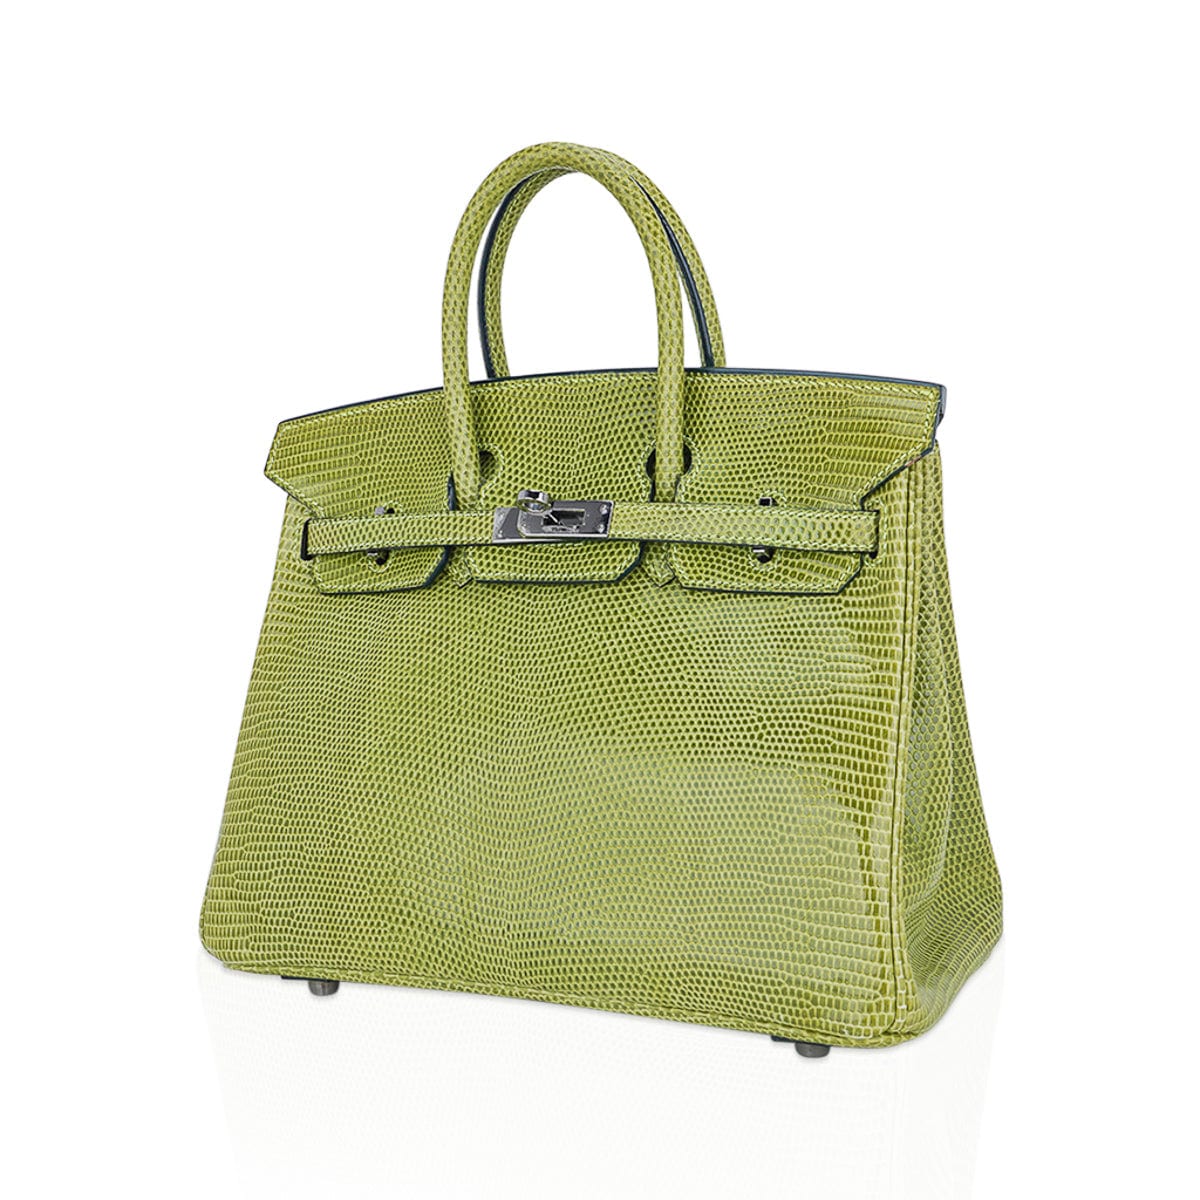 Hermes Birkin Handbag Green Ostrich with Palladium Hardware 30